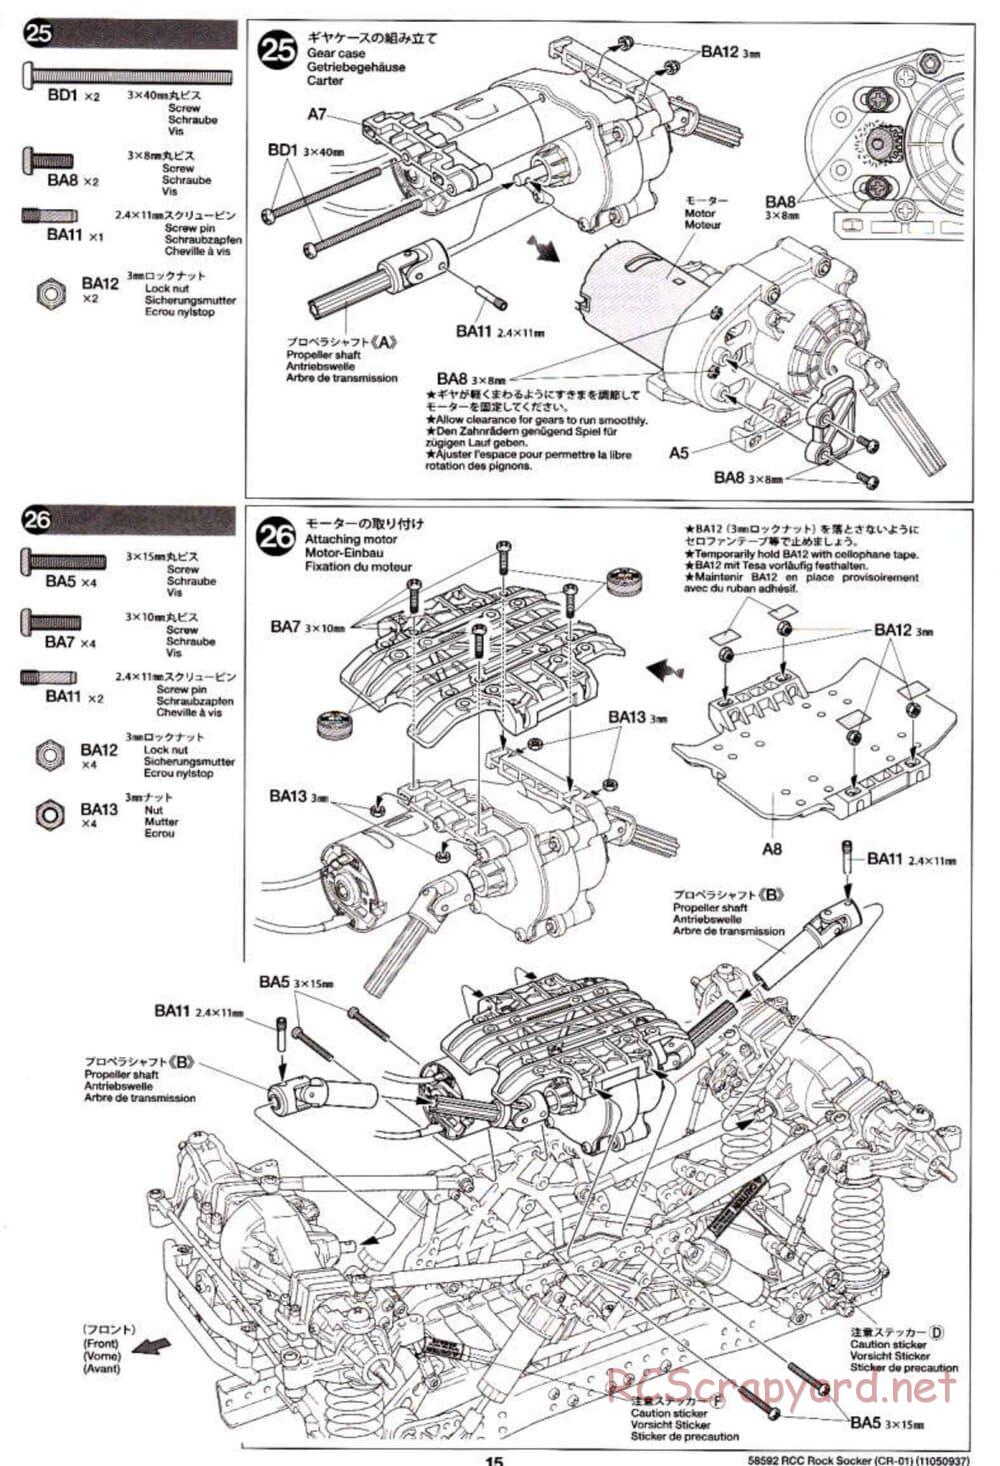 Tamiya - Rock Socker - CR-01 Chassis - Manual - Page 15